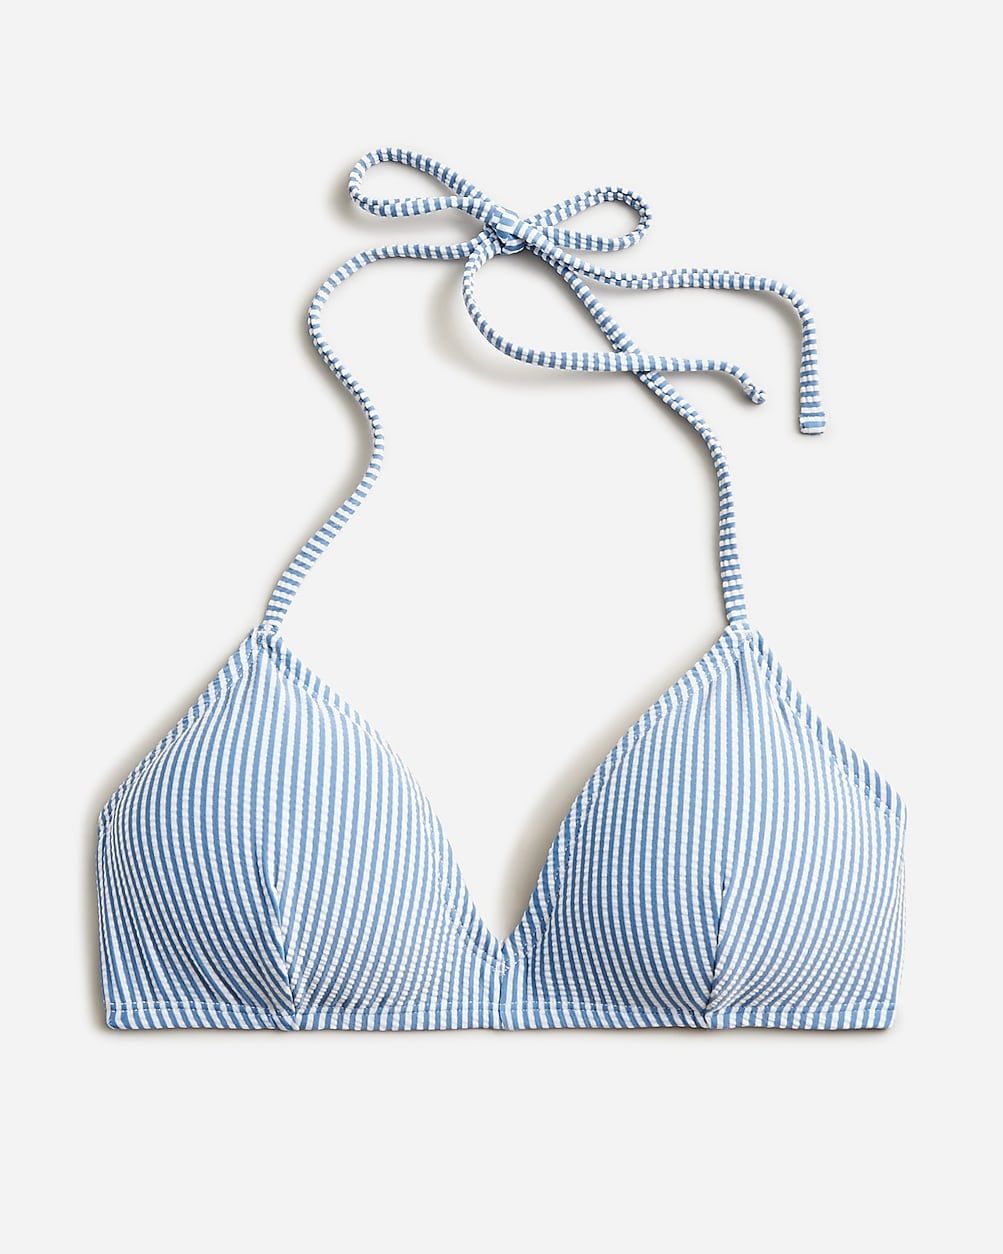 French halter-neck bikini top in seersucker | J.Crew US